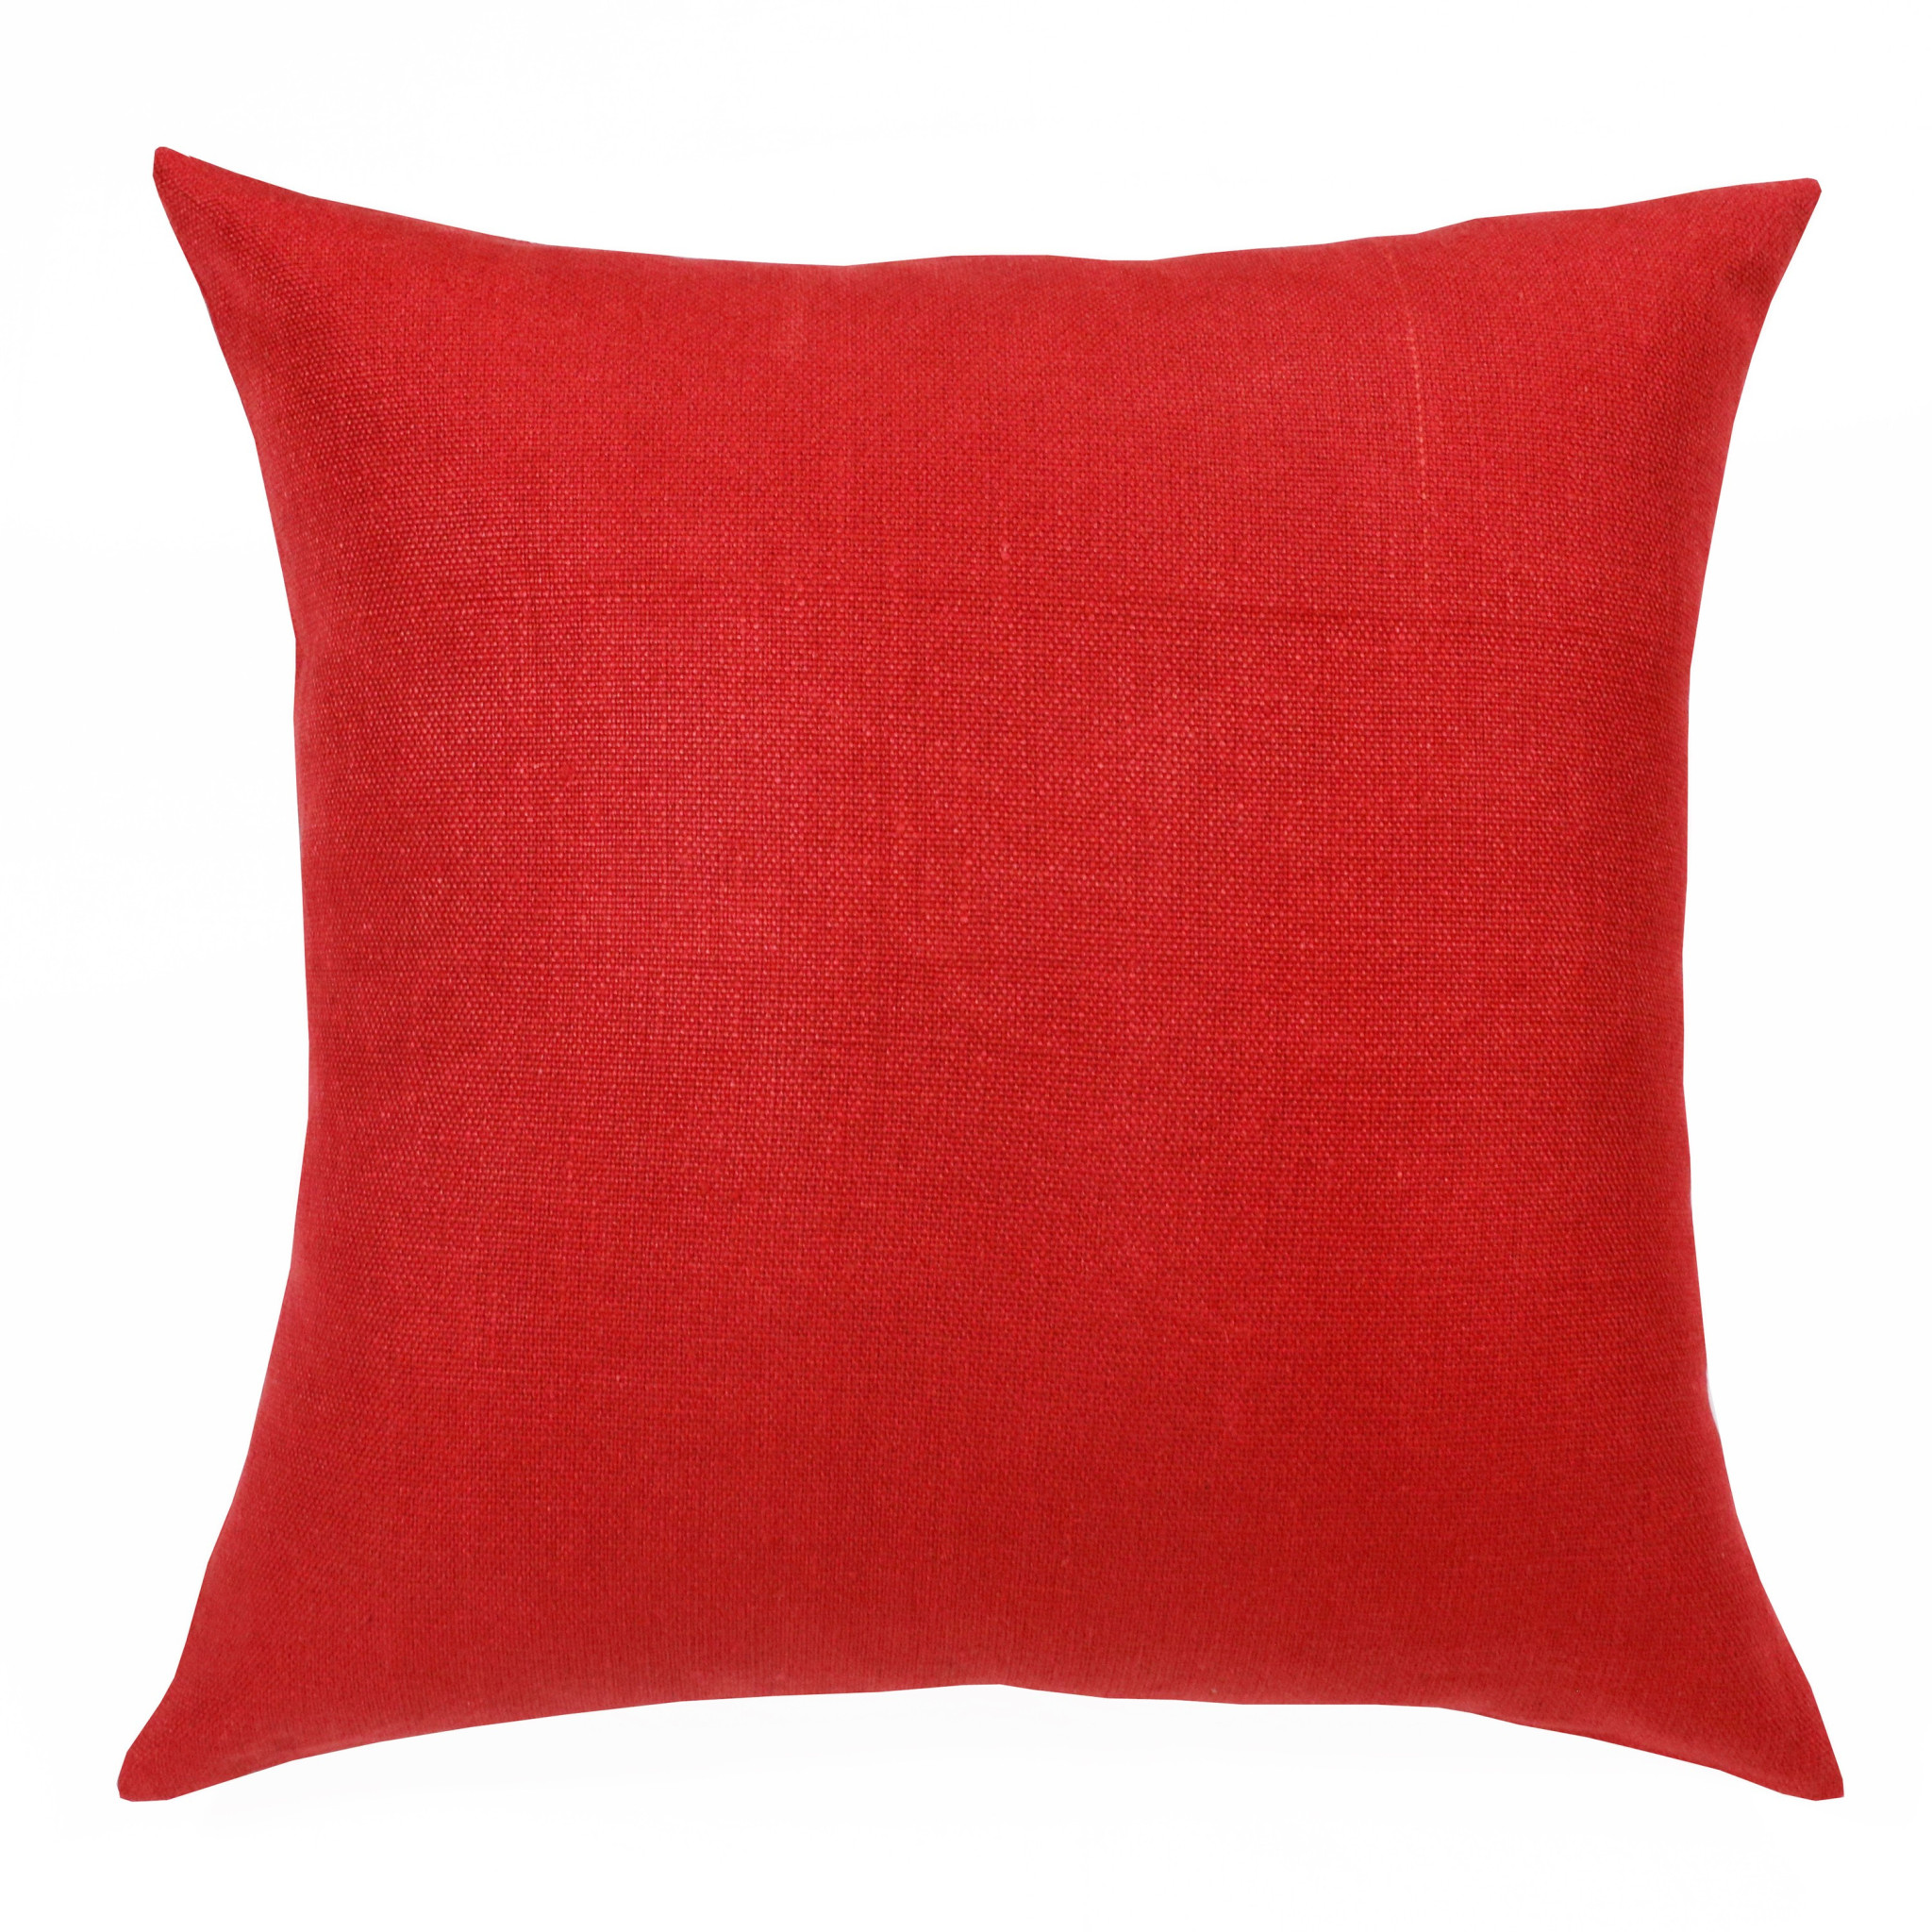 20" X 20" Red Linen Zippered Pillow-516992-1